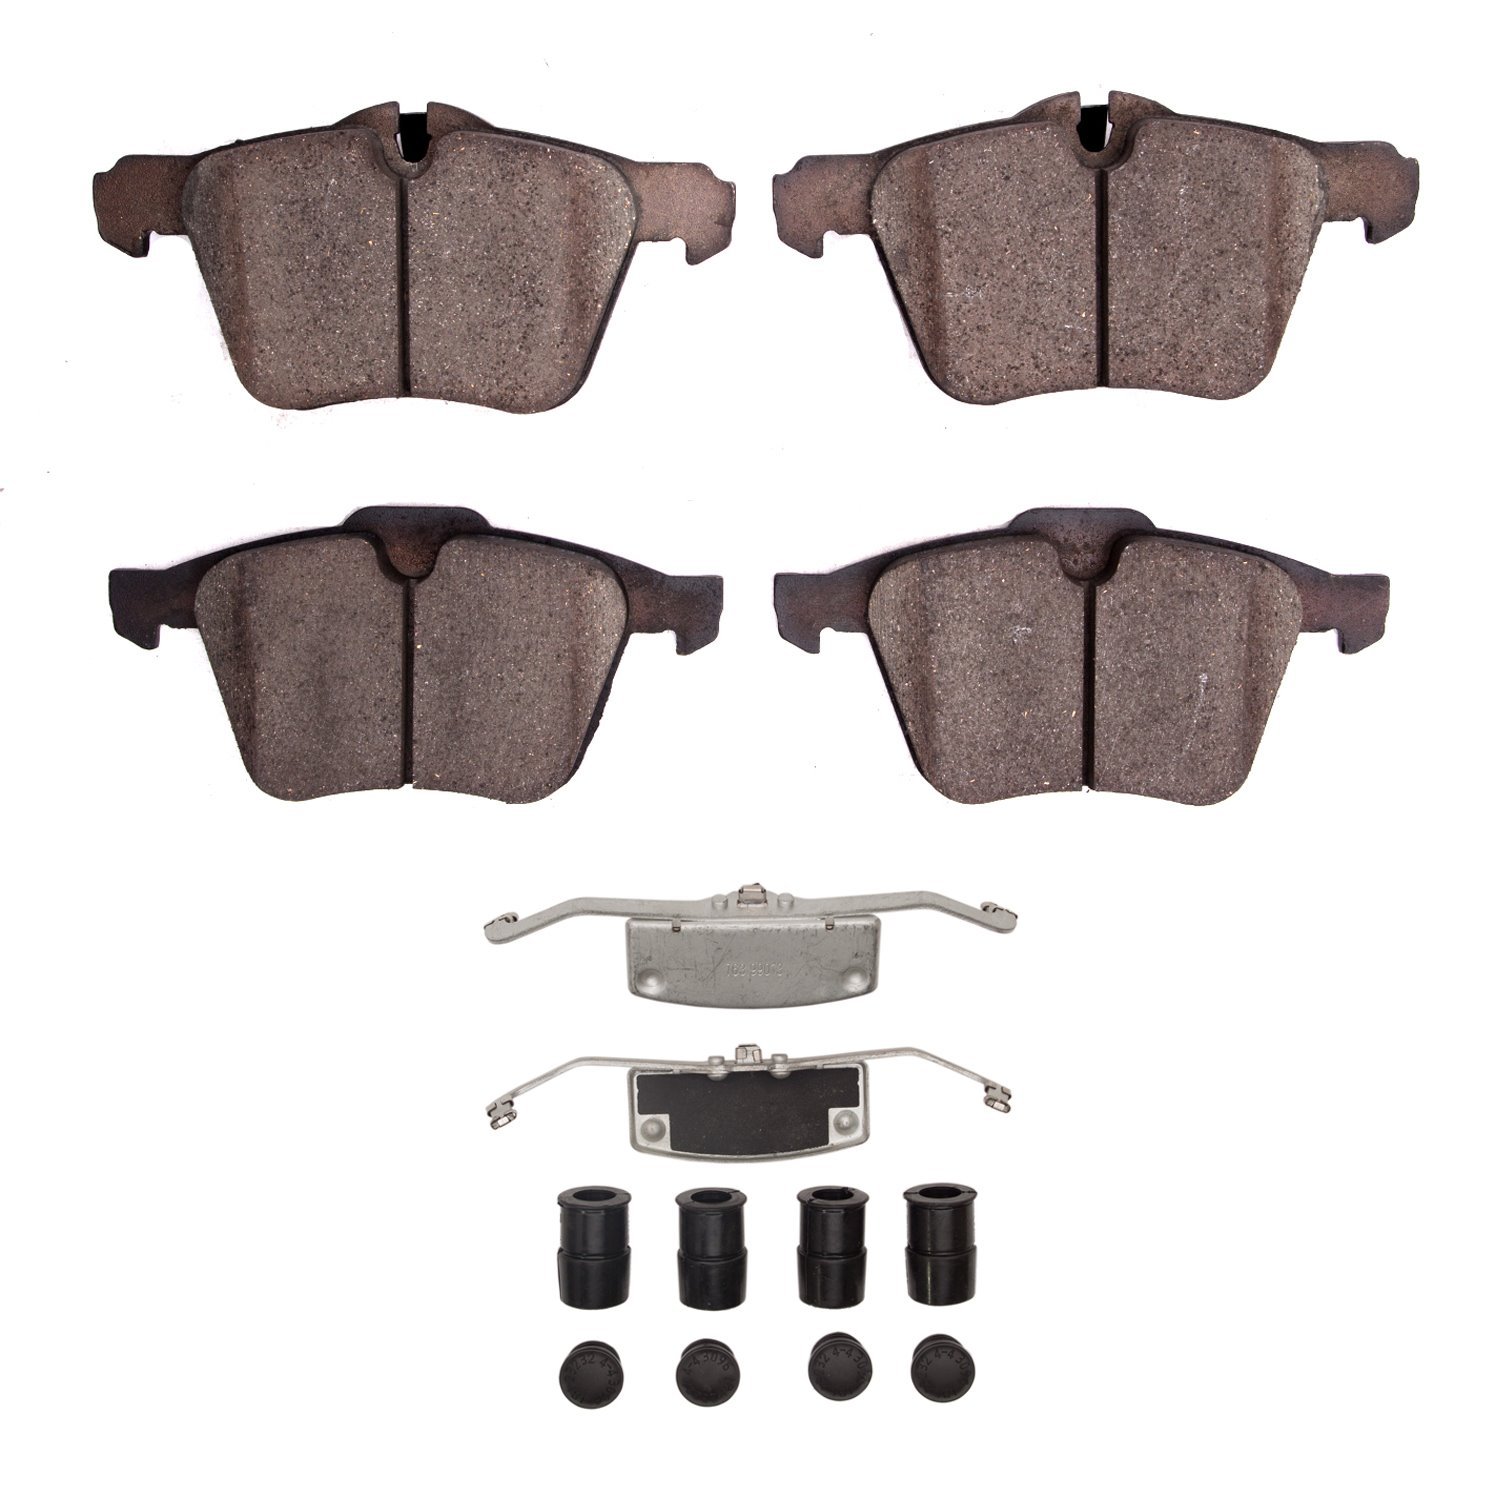 1311-1751-01 3000-Series Semi-Metallic Brake Pads & Hardware Kit, 2013-2021 Jaguar, Position: Front